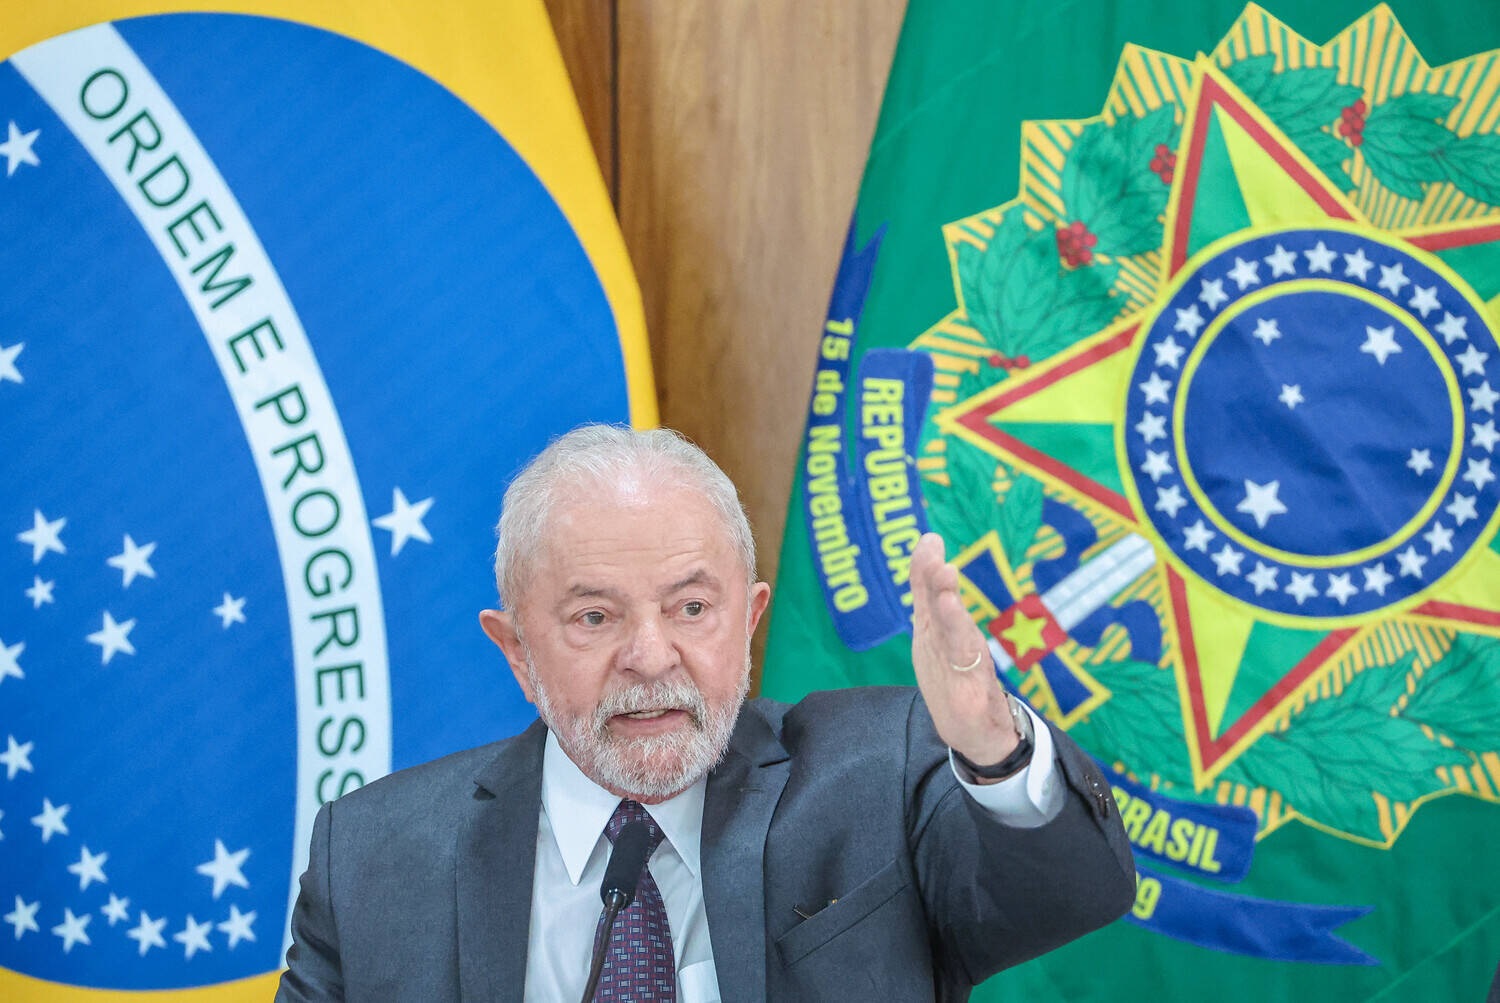 Lula reclama da Selic, mas taxa atingiu o maior patamar do século no primeiro mandato petista